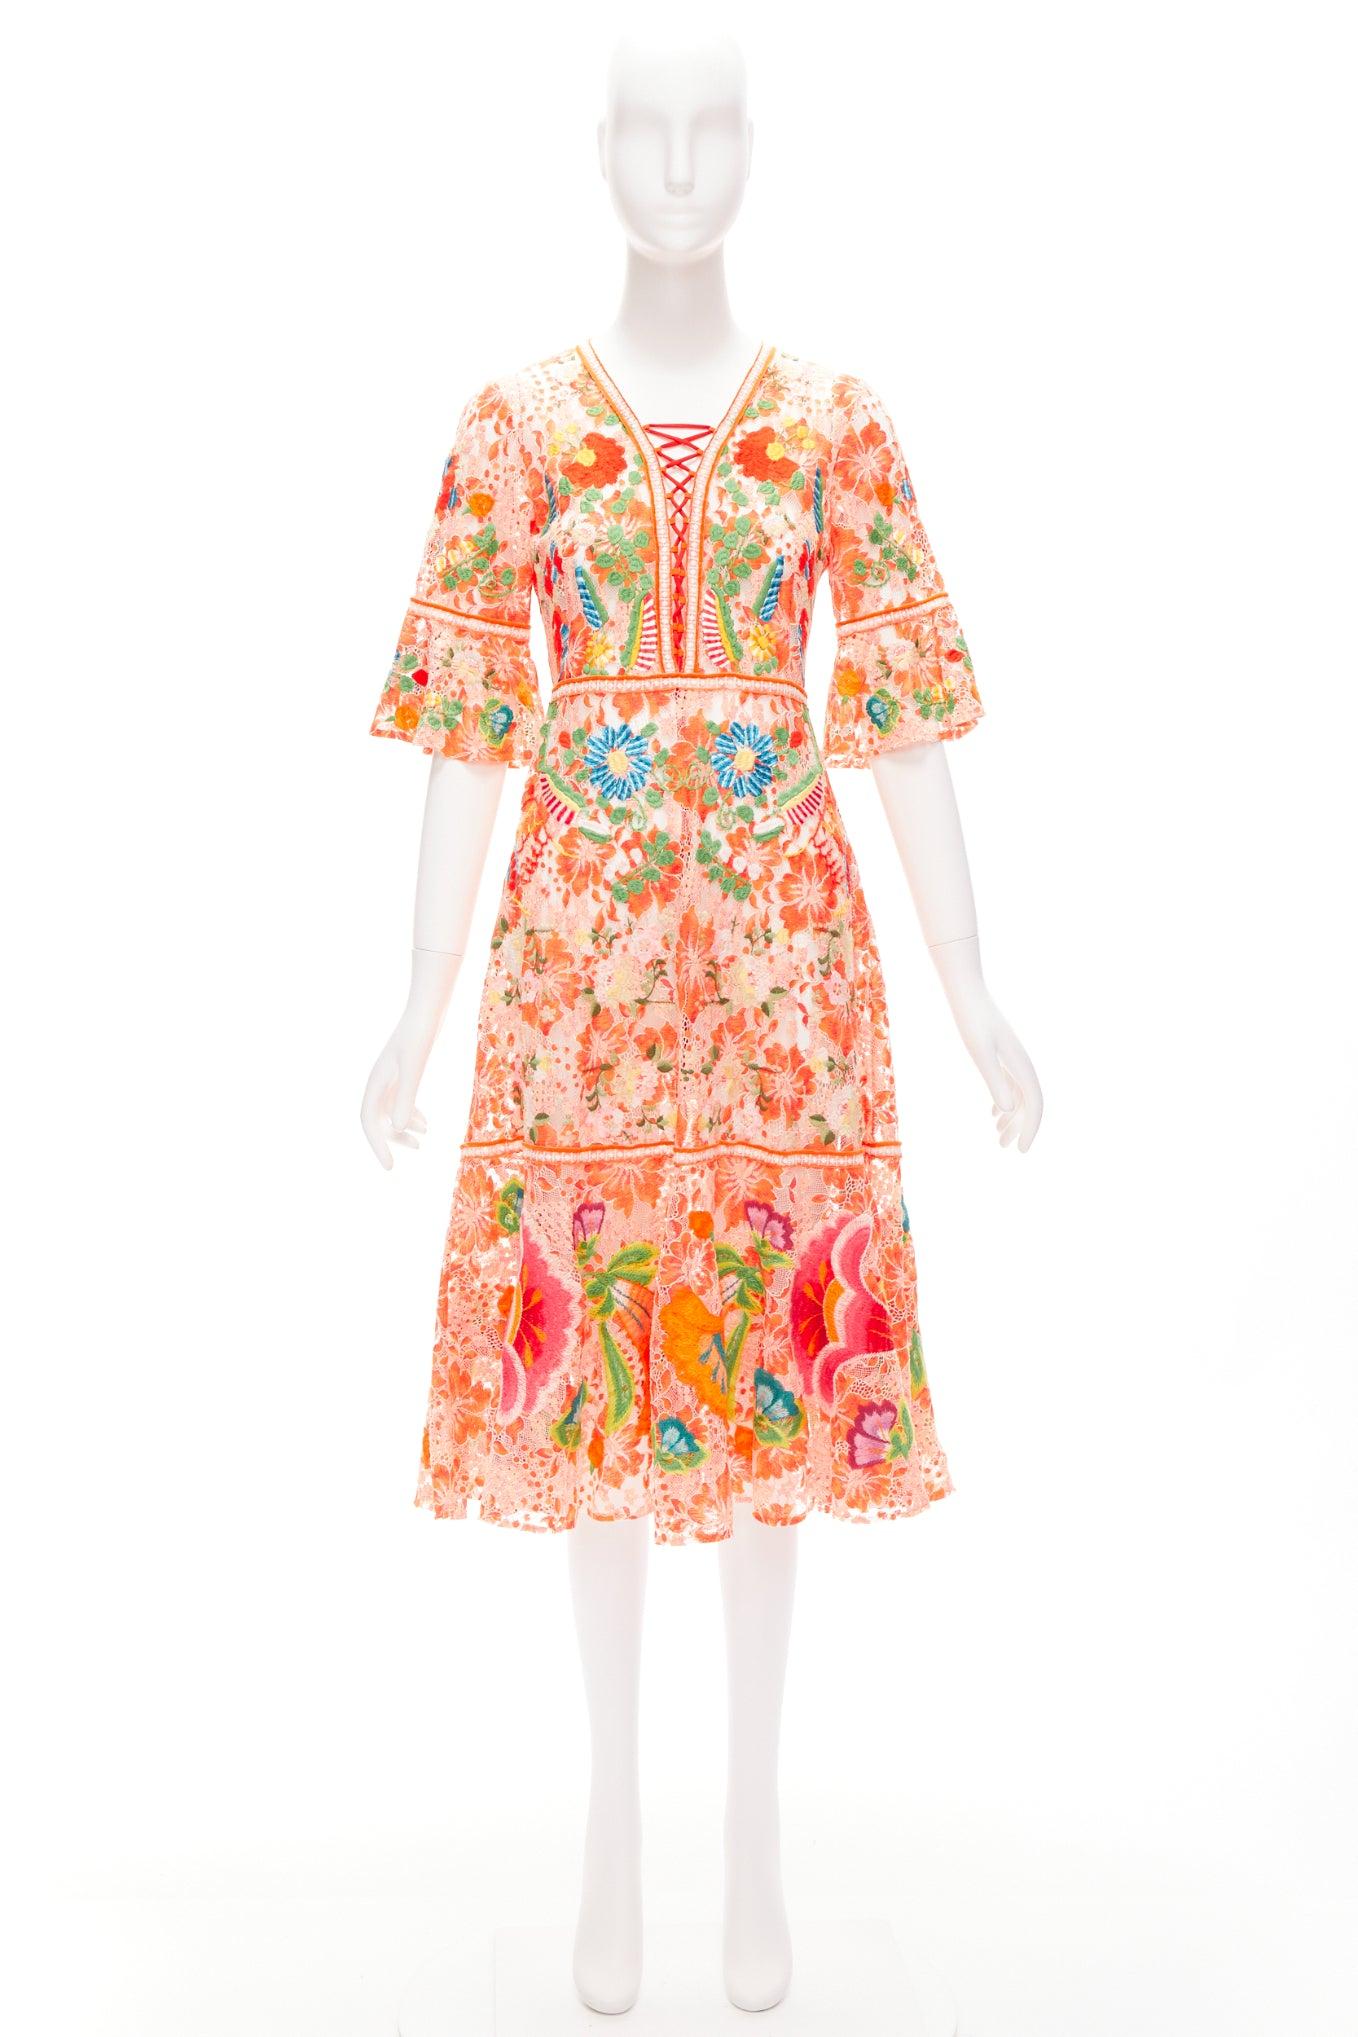 VIVIENNE TAM orange floral cotton lace laced up midi dress US2 S For Sale 3